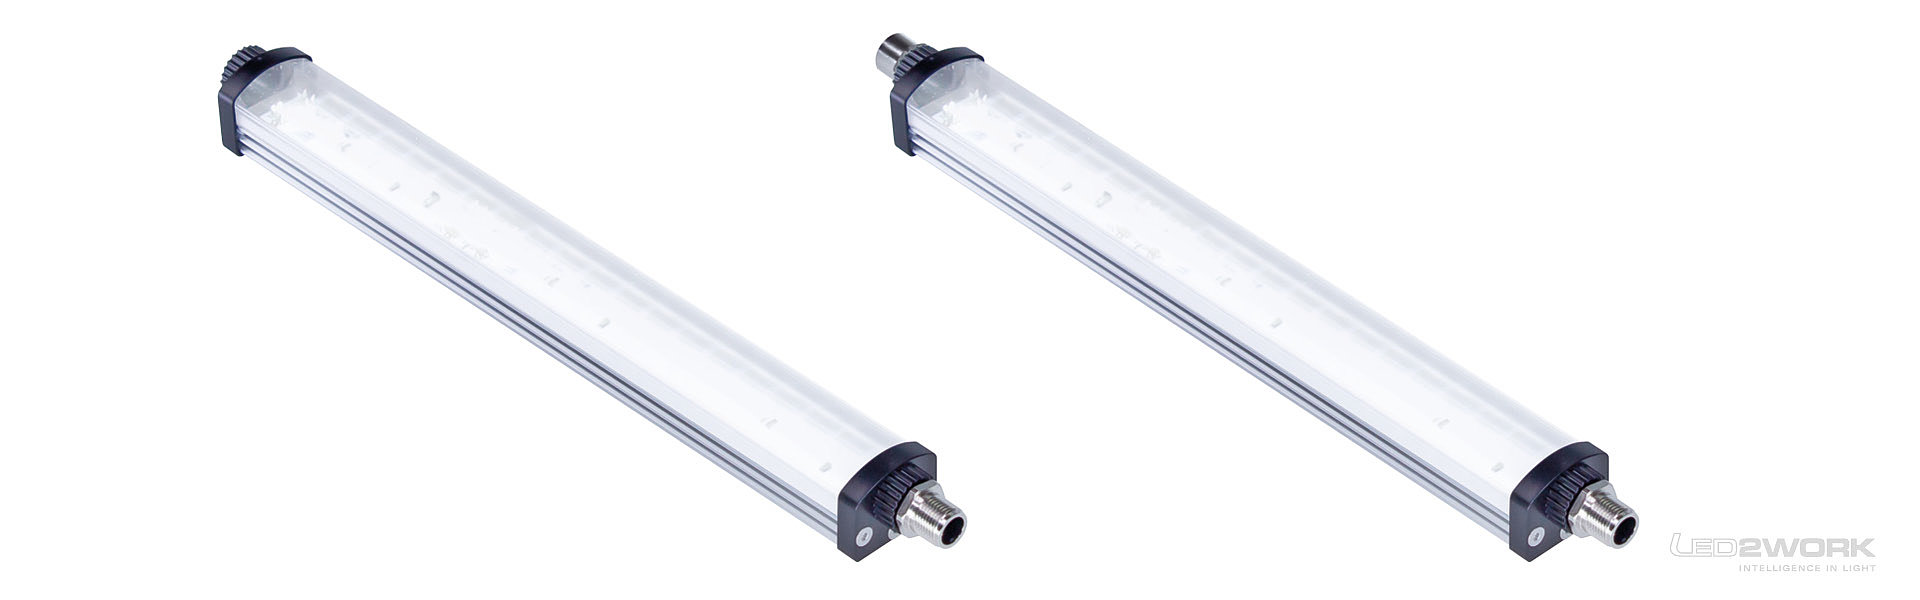 Deslizador | Luminaria LED para máquinas | Luminaria LED de superficie | Luminaria LED para postes | LEANLED II | próximamente | LED2WORK